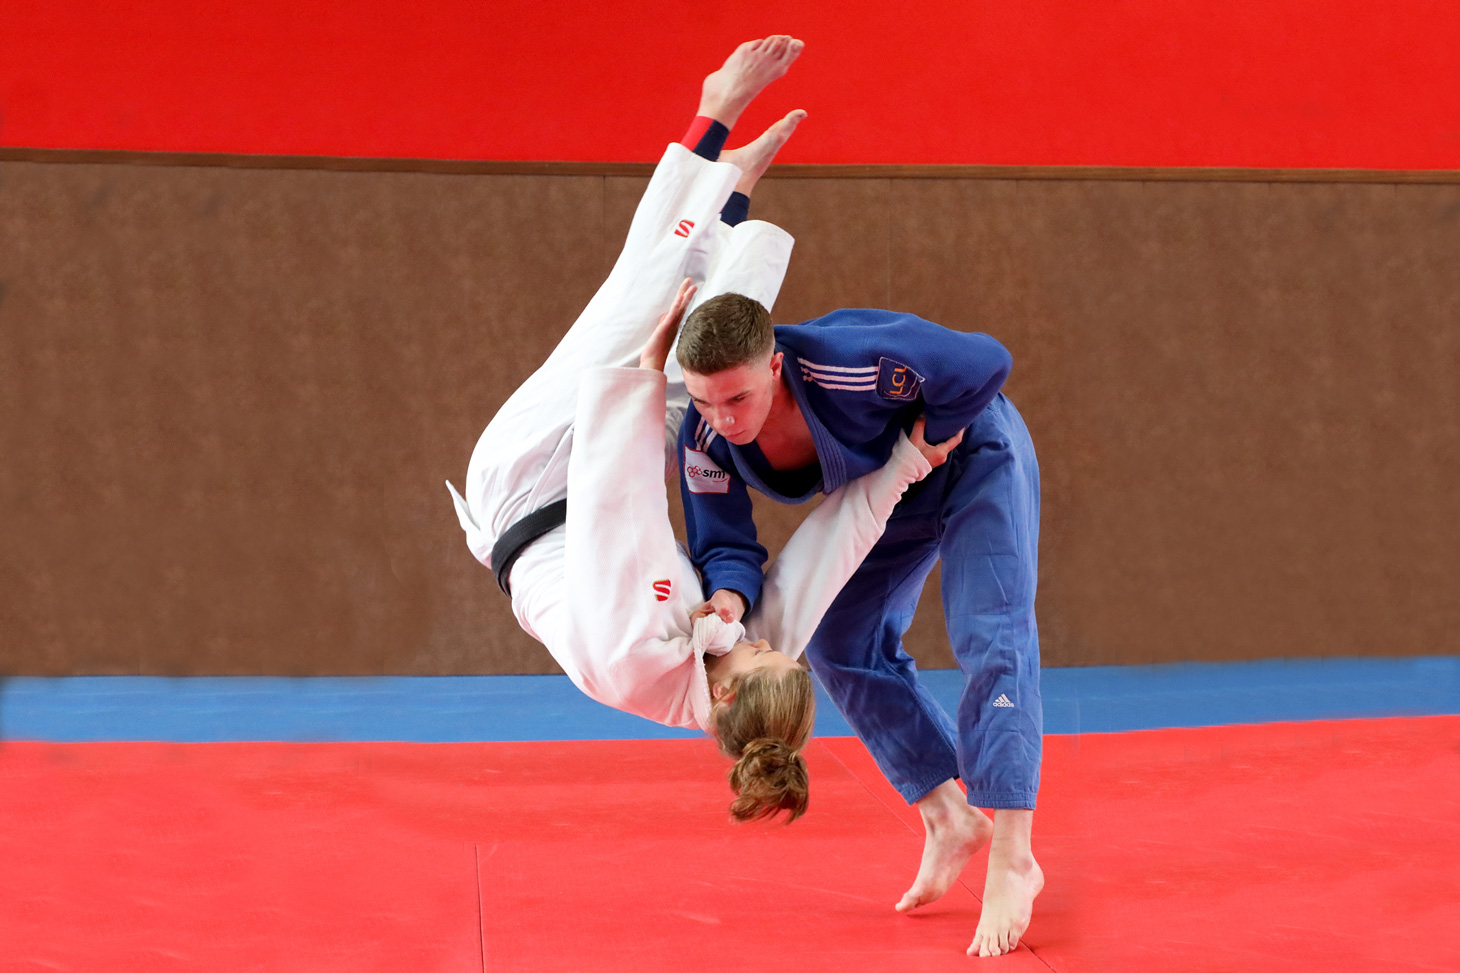 Séance d’entraînement au sein du CUFE Judo sur les tatamis de l’Université Grenoble Alpes